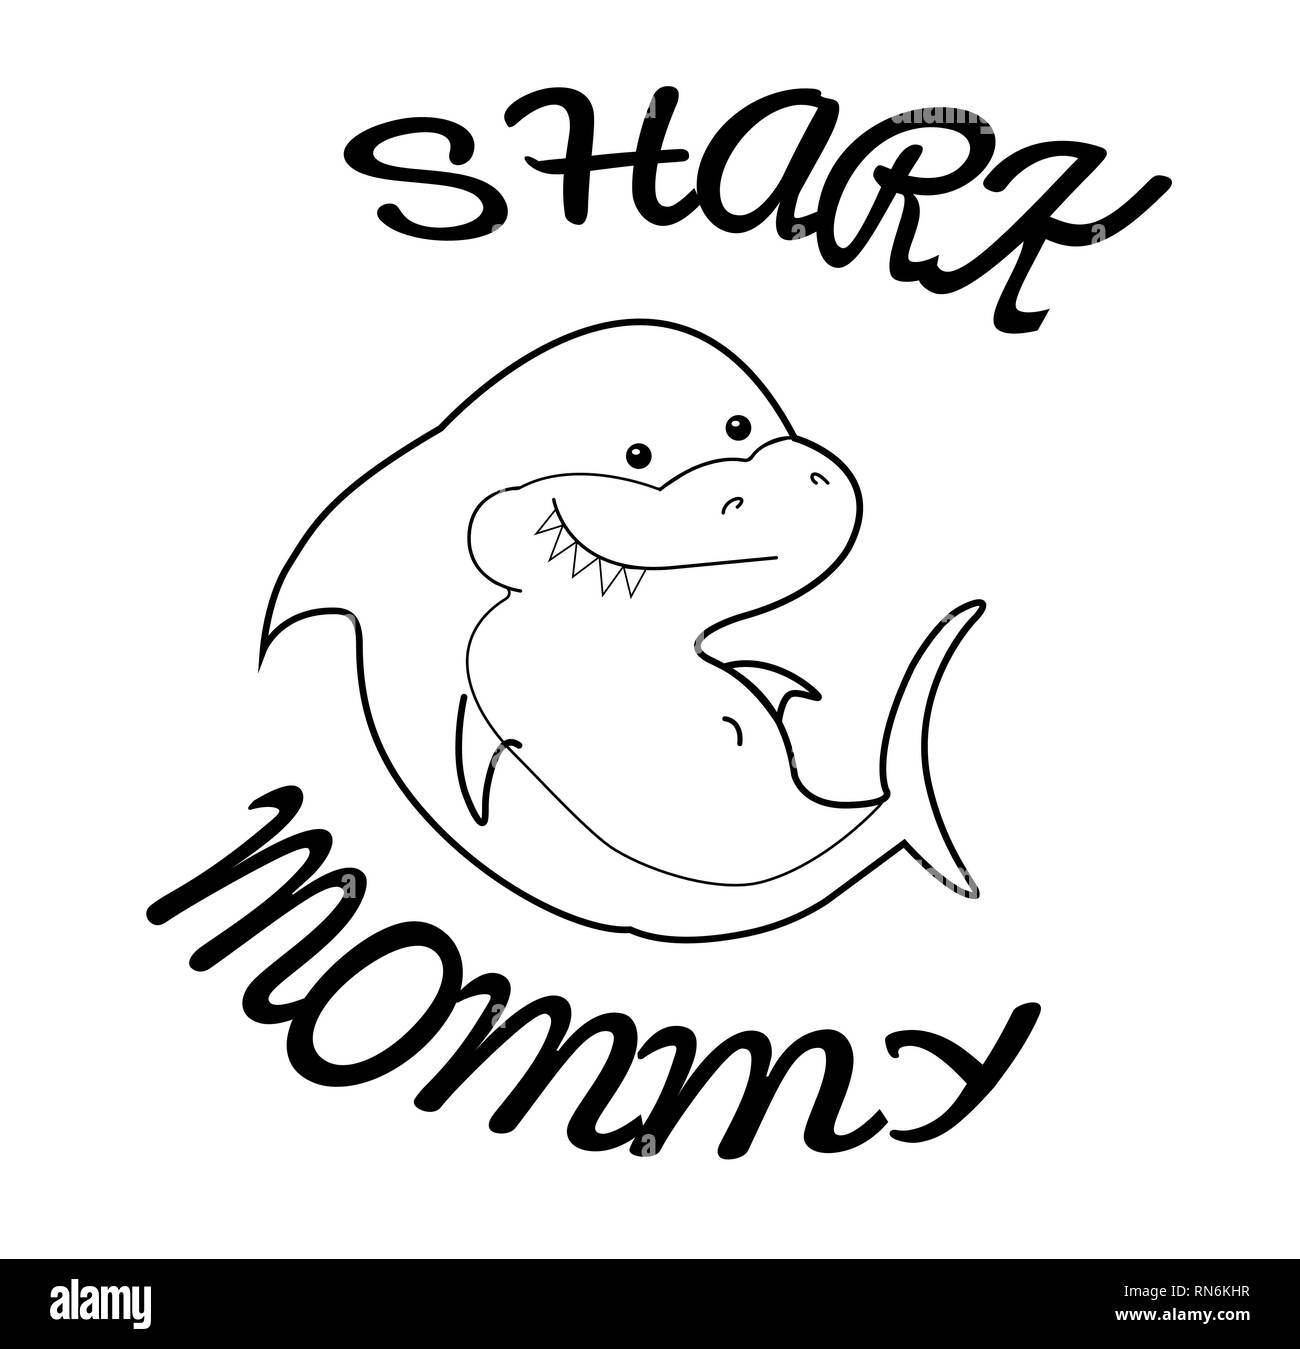 La famiglia felice squali. Mamma squalo. Cartoon carino contorno di animali marini. Trasparente silhouette nera su sfondo bianco. Illustrazione lineare per Illustrazione Vettoriale